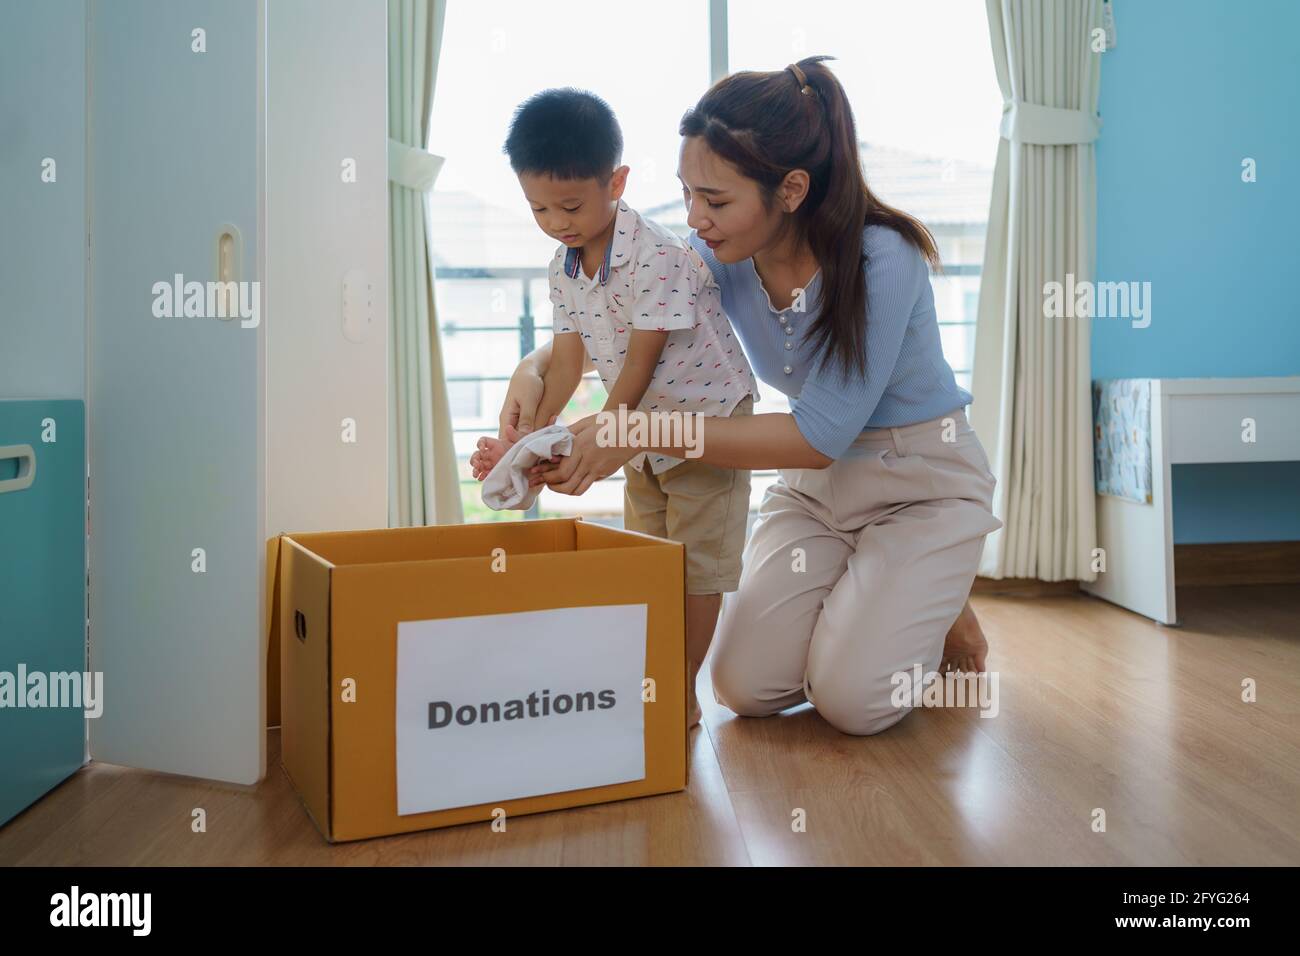 La mère et le fils asiatiques sont debout près du placard des vêtements dans le dressing portant une boîte de vêtements donnés à apporter au centre de dons. Banque D'Images